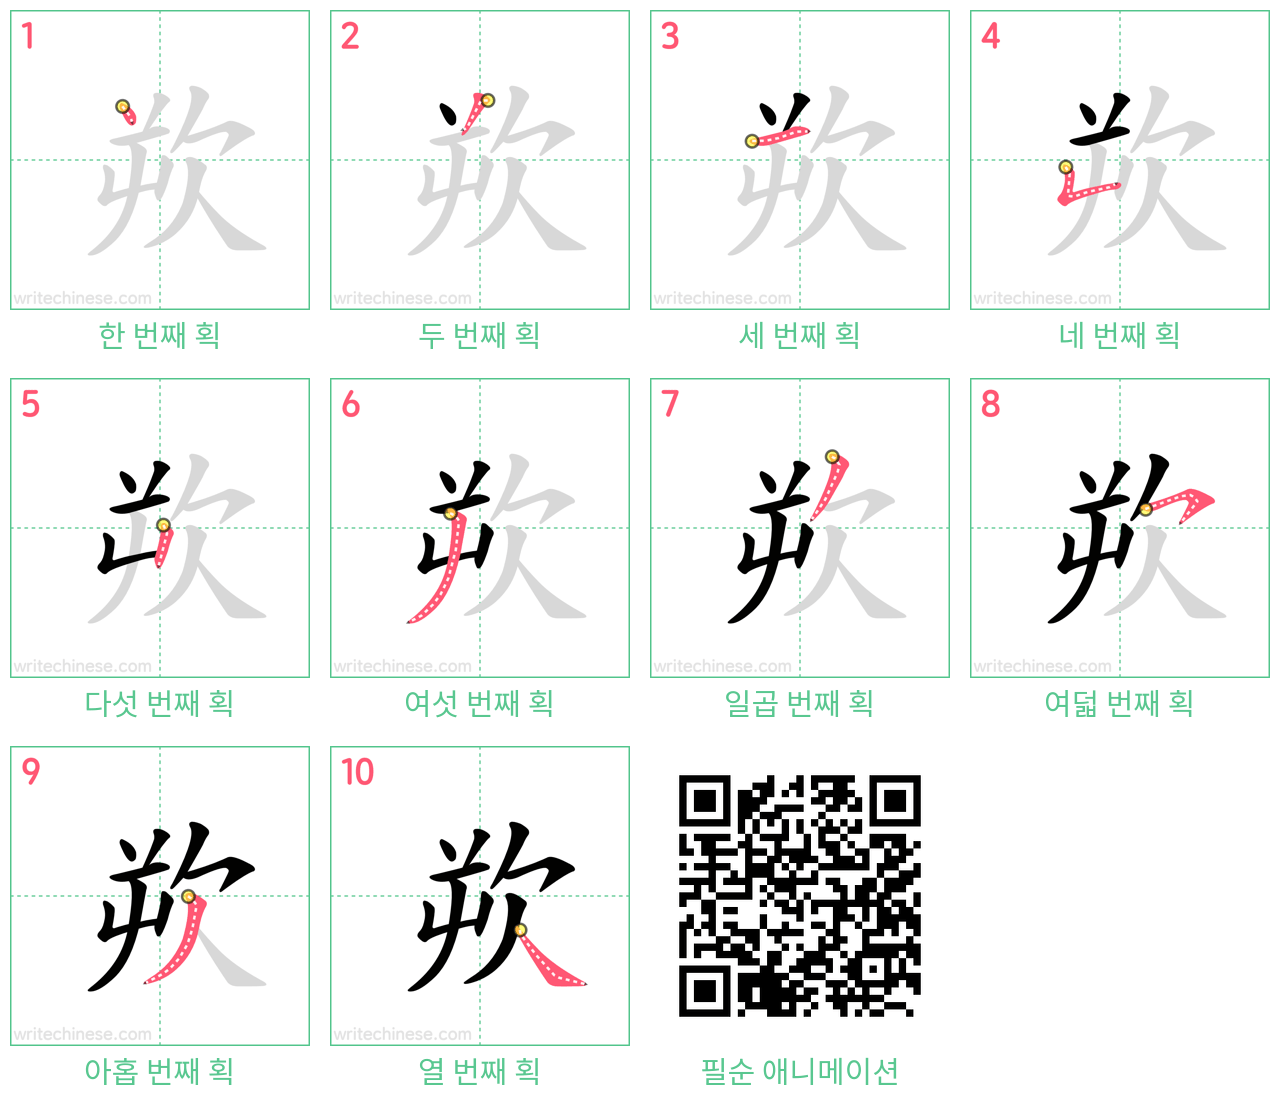 欮 step-by-step stroke order diagrams